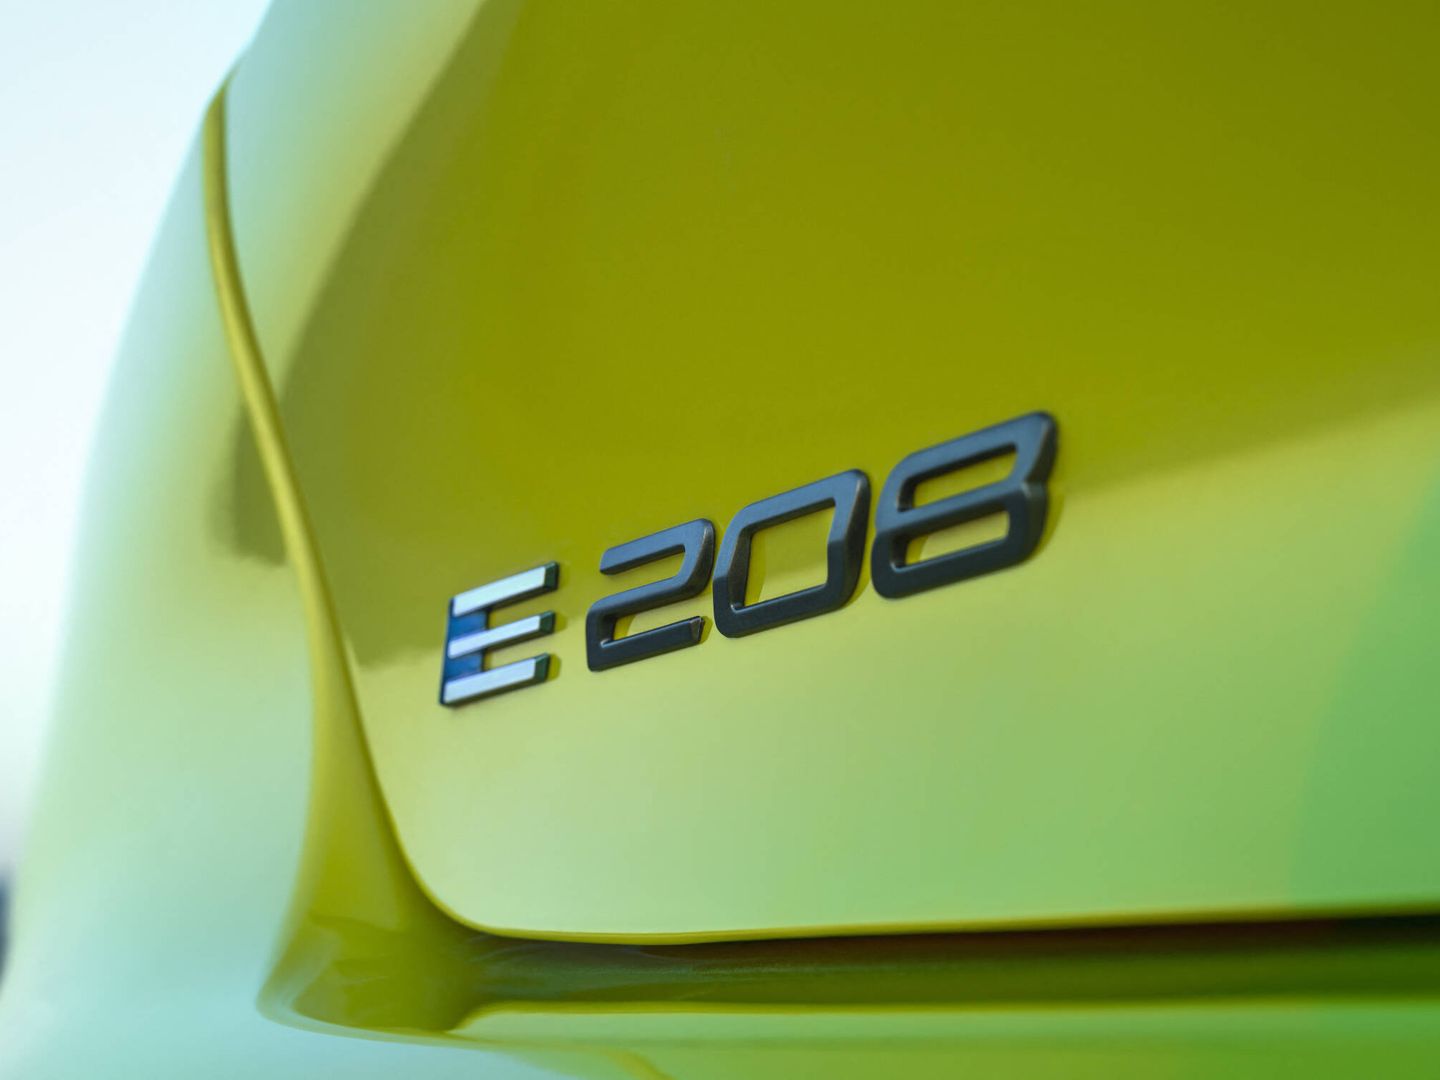 A diferencia del resto de versiones, en el e-208 la letra 'E' luce en azul y blanco.